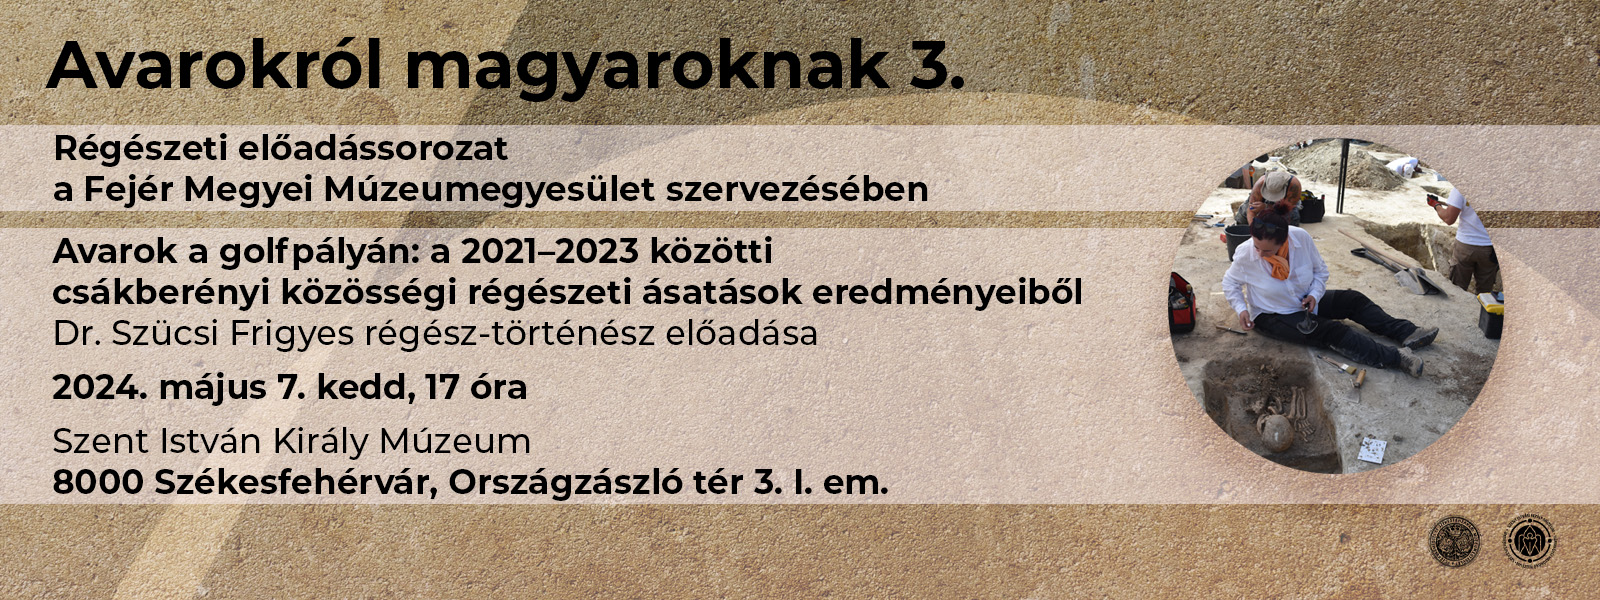 Avarokról magyaroknak – előadássorozat 3. | Avarok a golfpályán